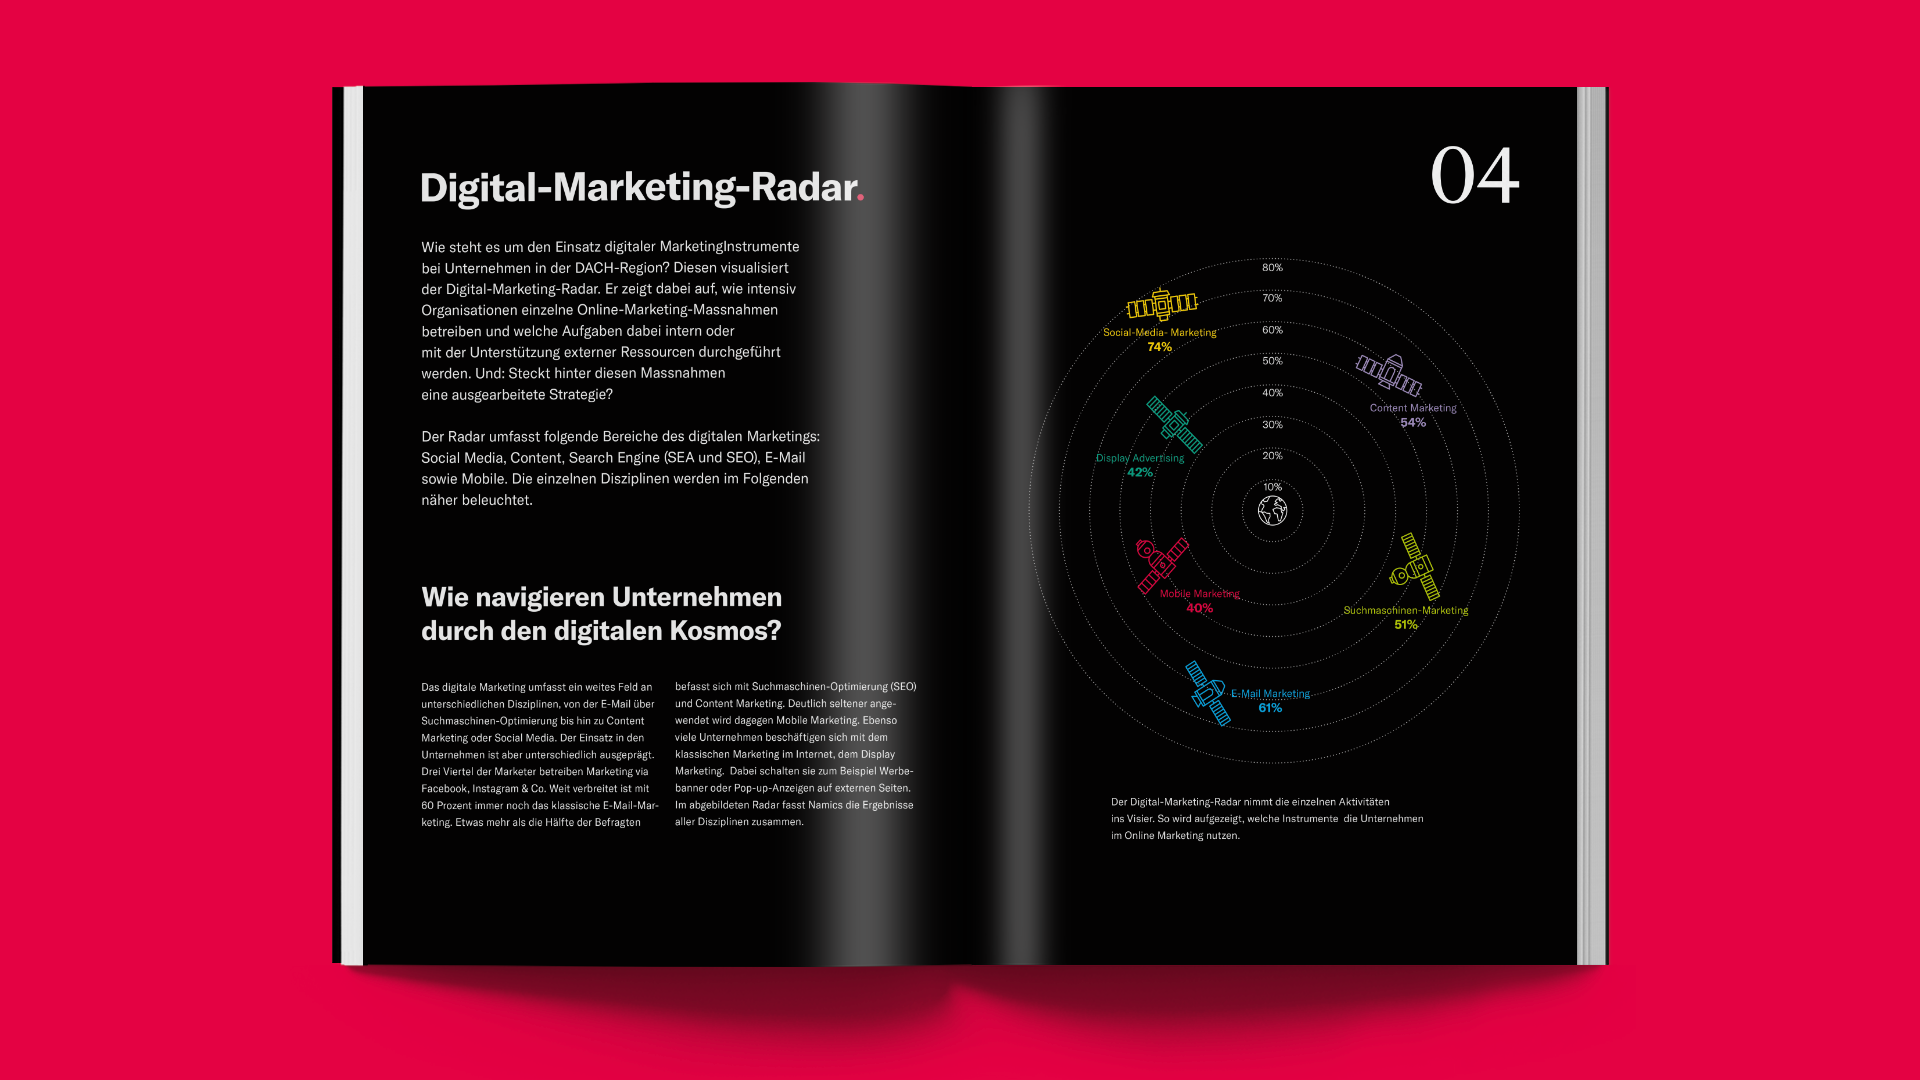 Digital-Marketing-Monitor 2020: Übersicht zu den Marketingaktivitäten